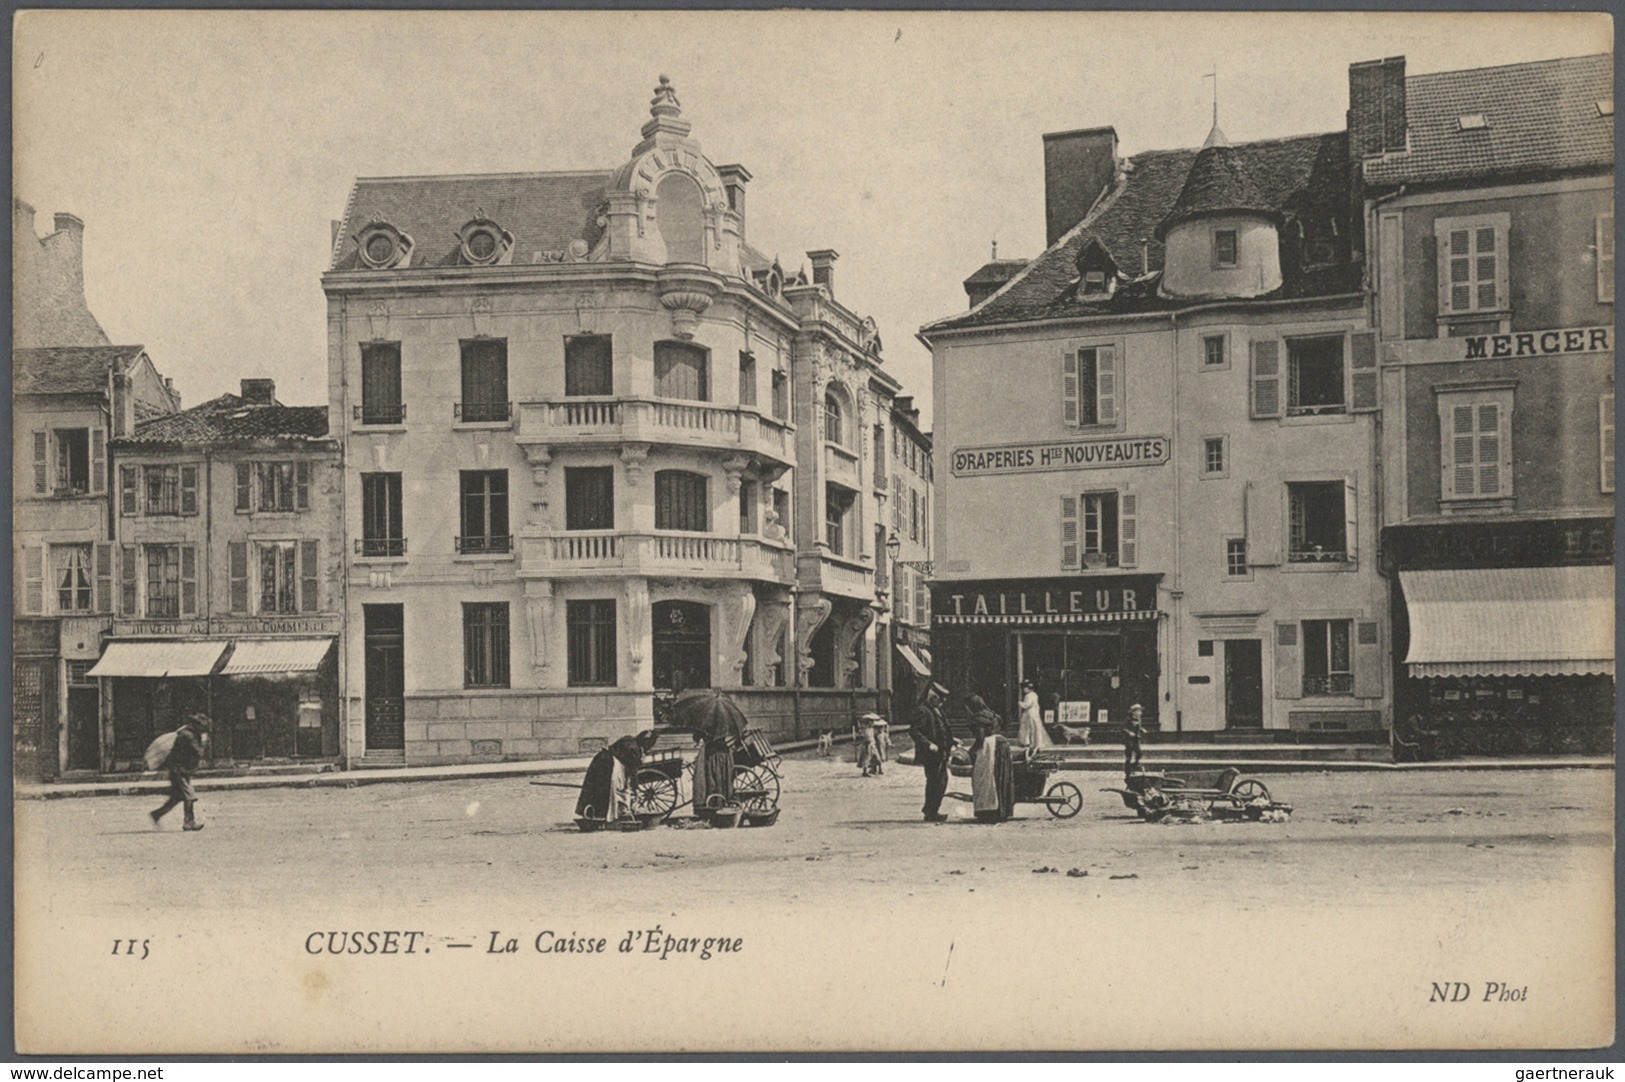 26539 Frankreich - Besonderheiten: 1898/1930, FRANCE, immense stock of around 51500 historical picture pos